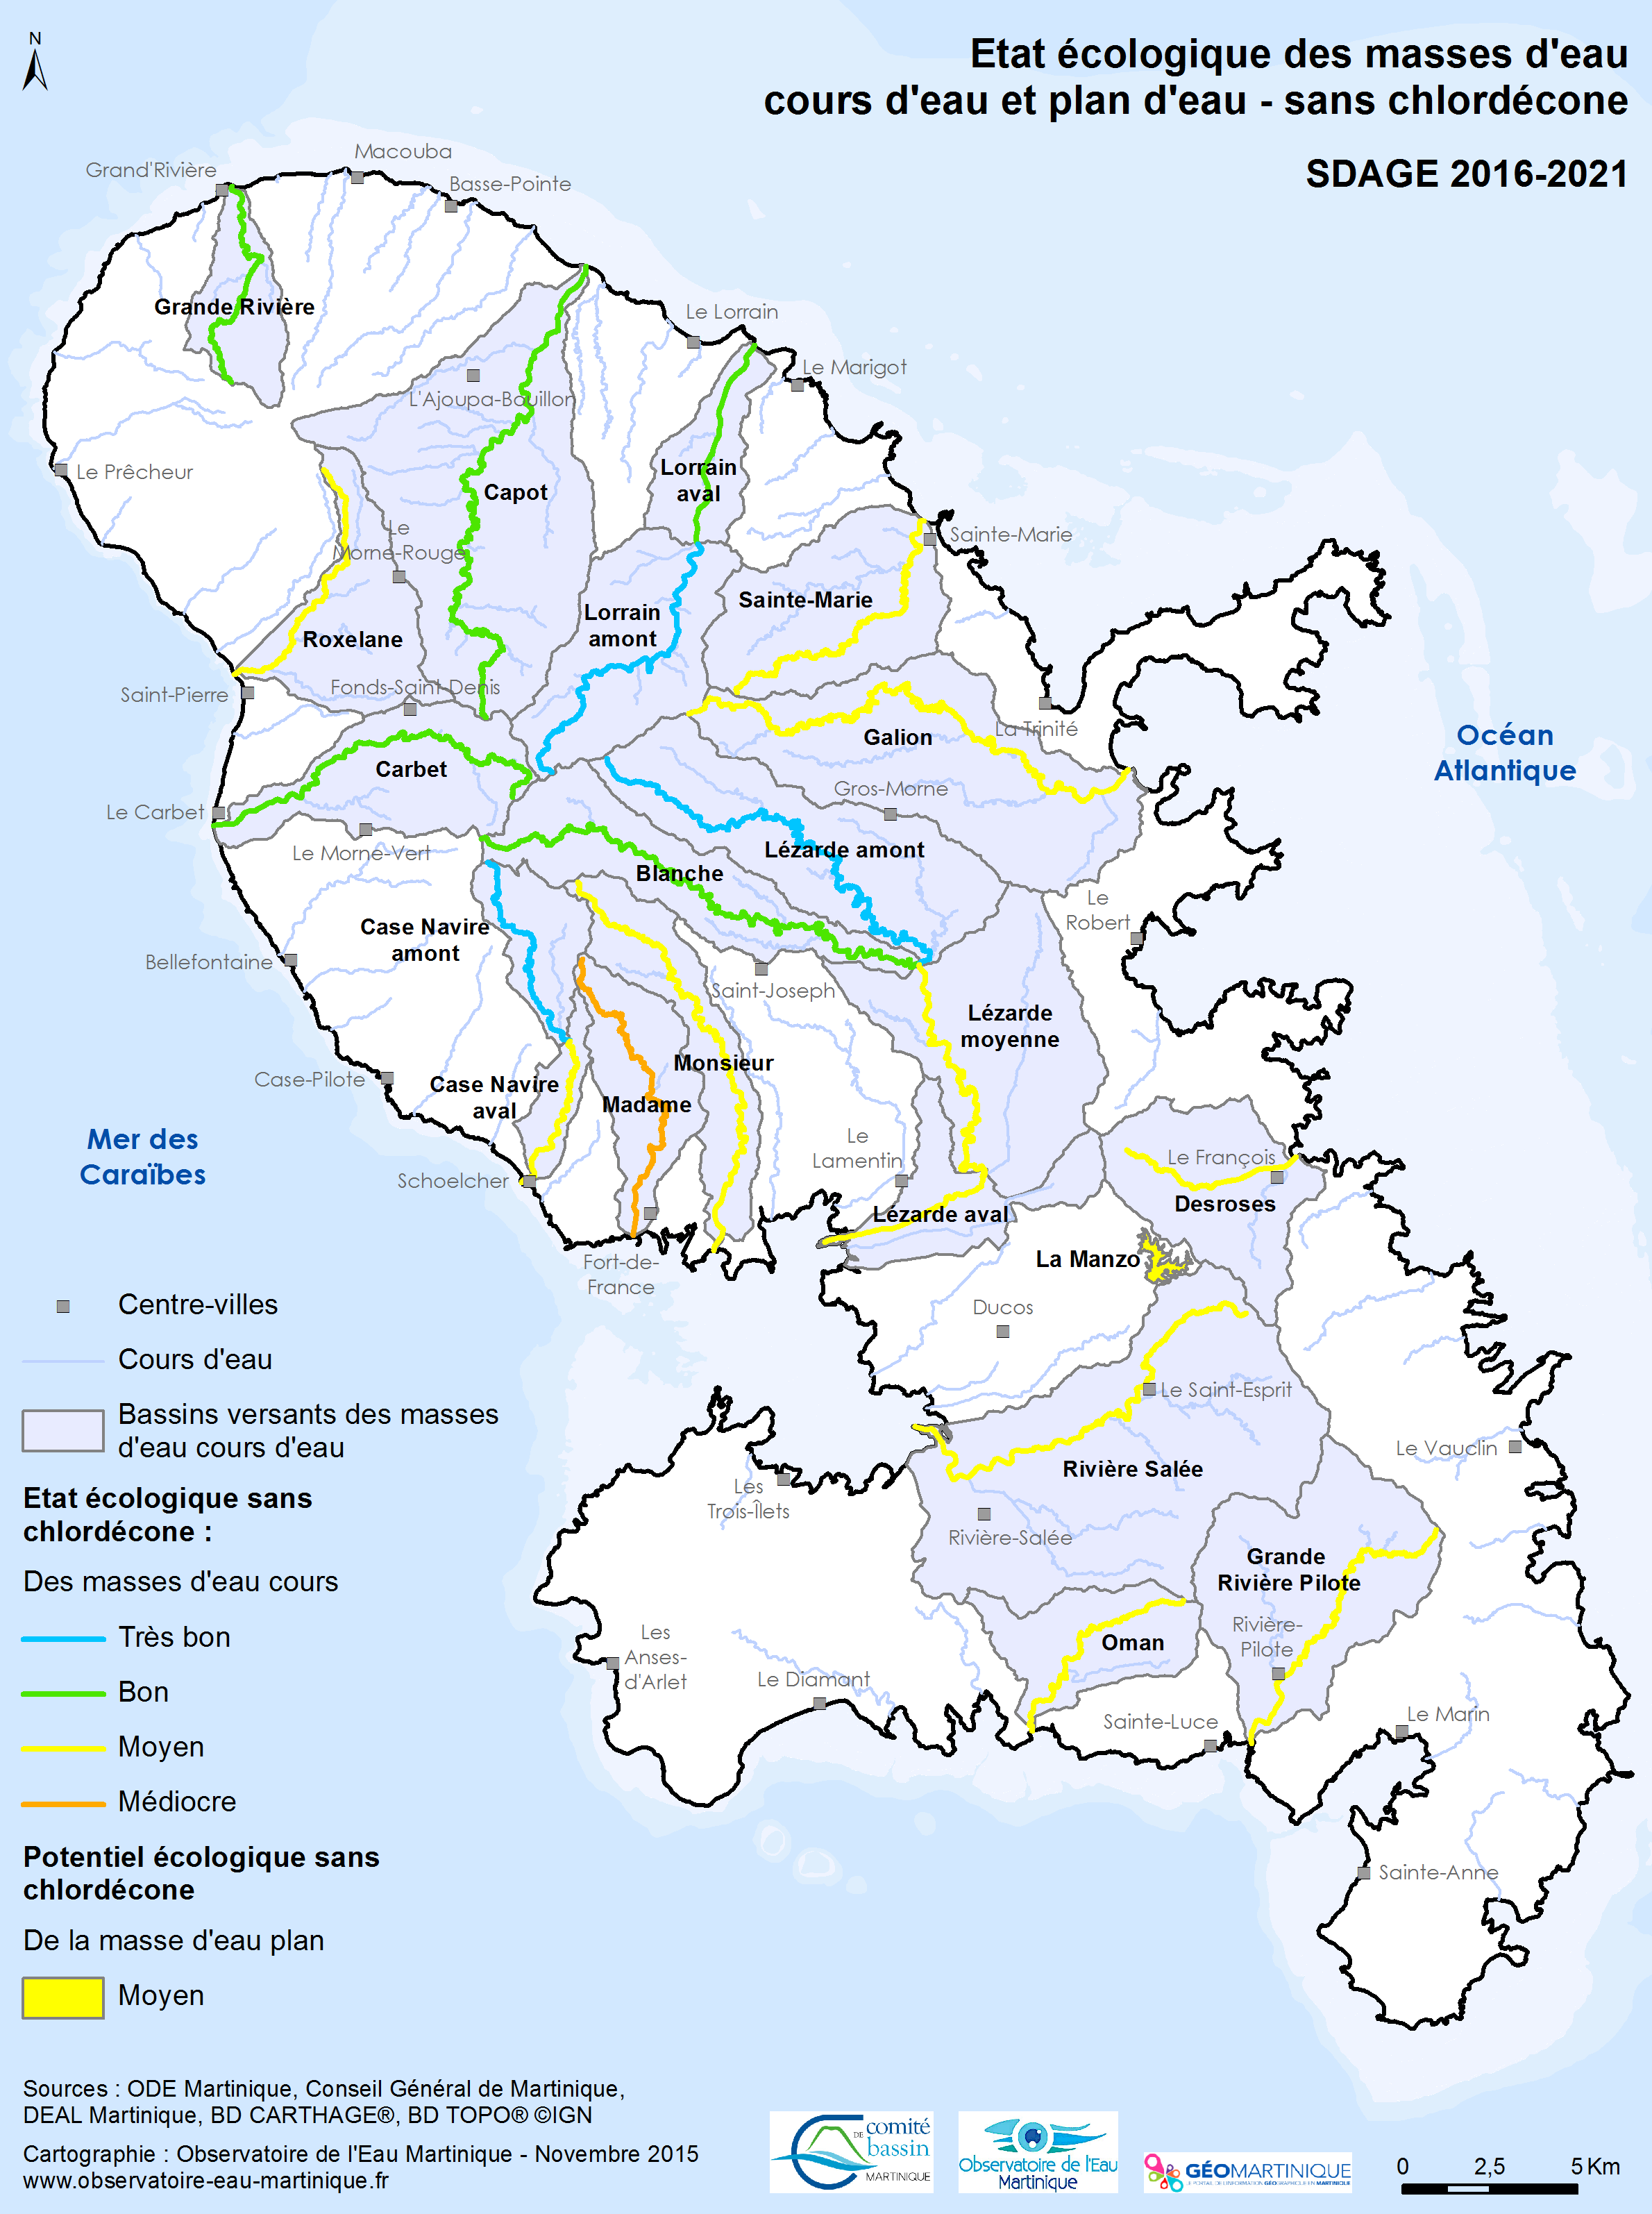 SDAGE 2016-2021 - Etat écologique des masses d'eau cours d'eau et plan d'eau sans chlordécone